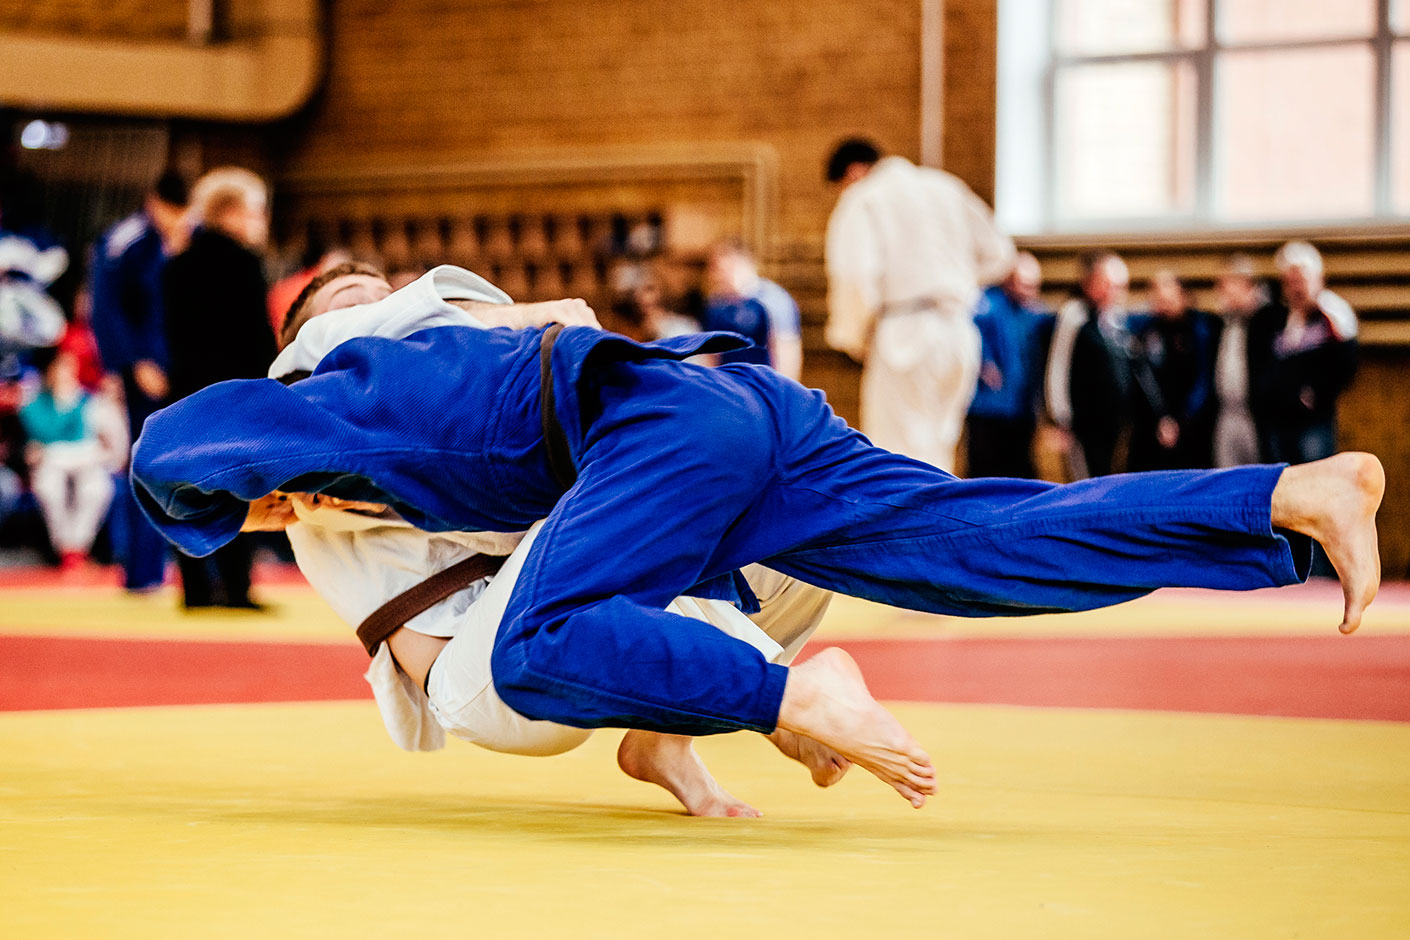 alimentazione per allenamenti e gare di judo con macronutrienti programmati dal nutrizionista per migliorare le prestazioni del judoka